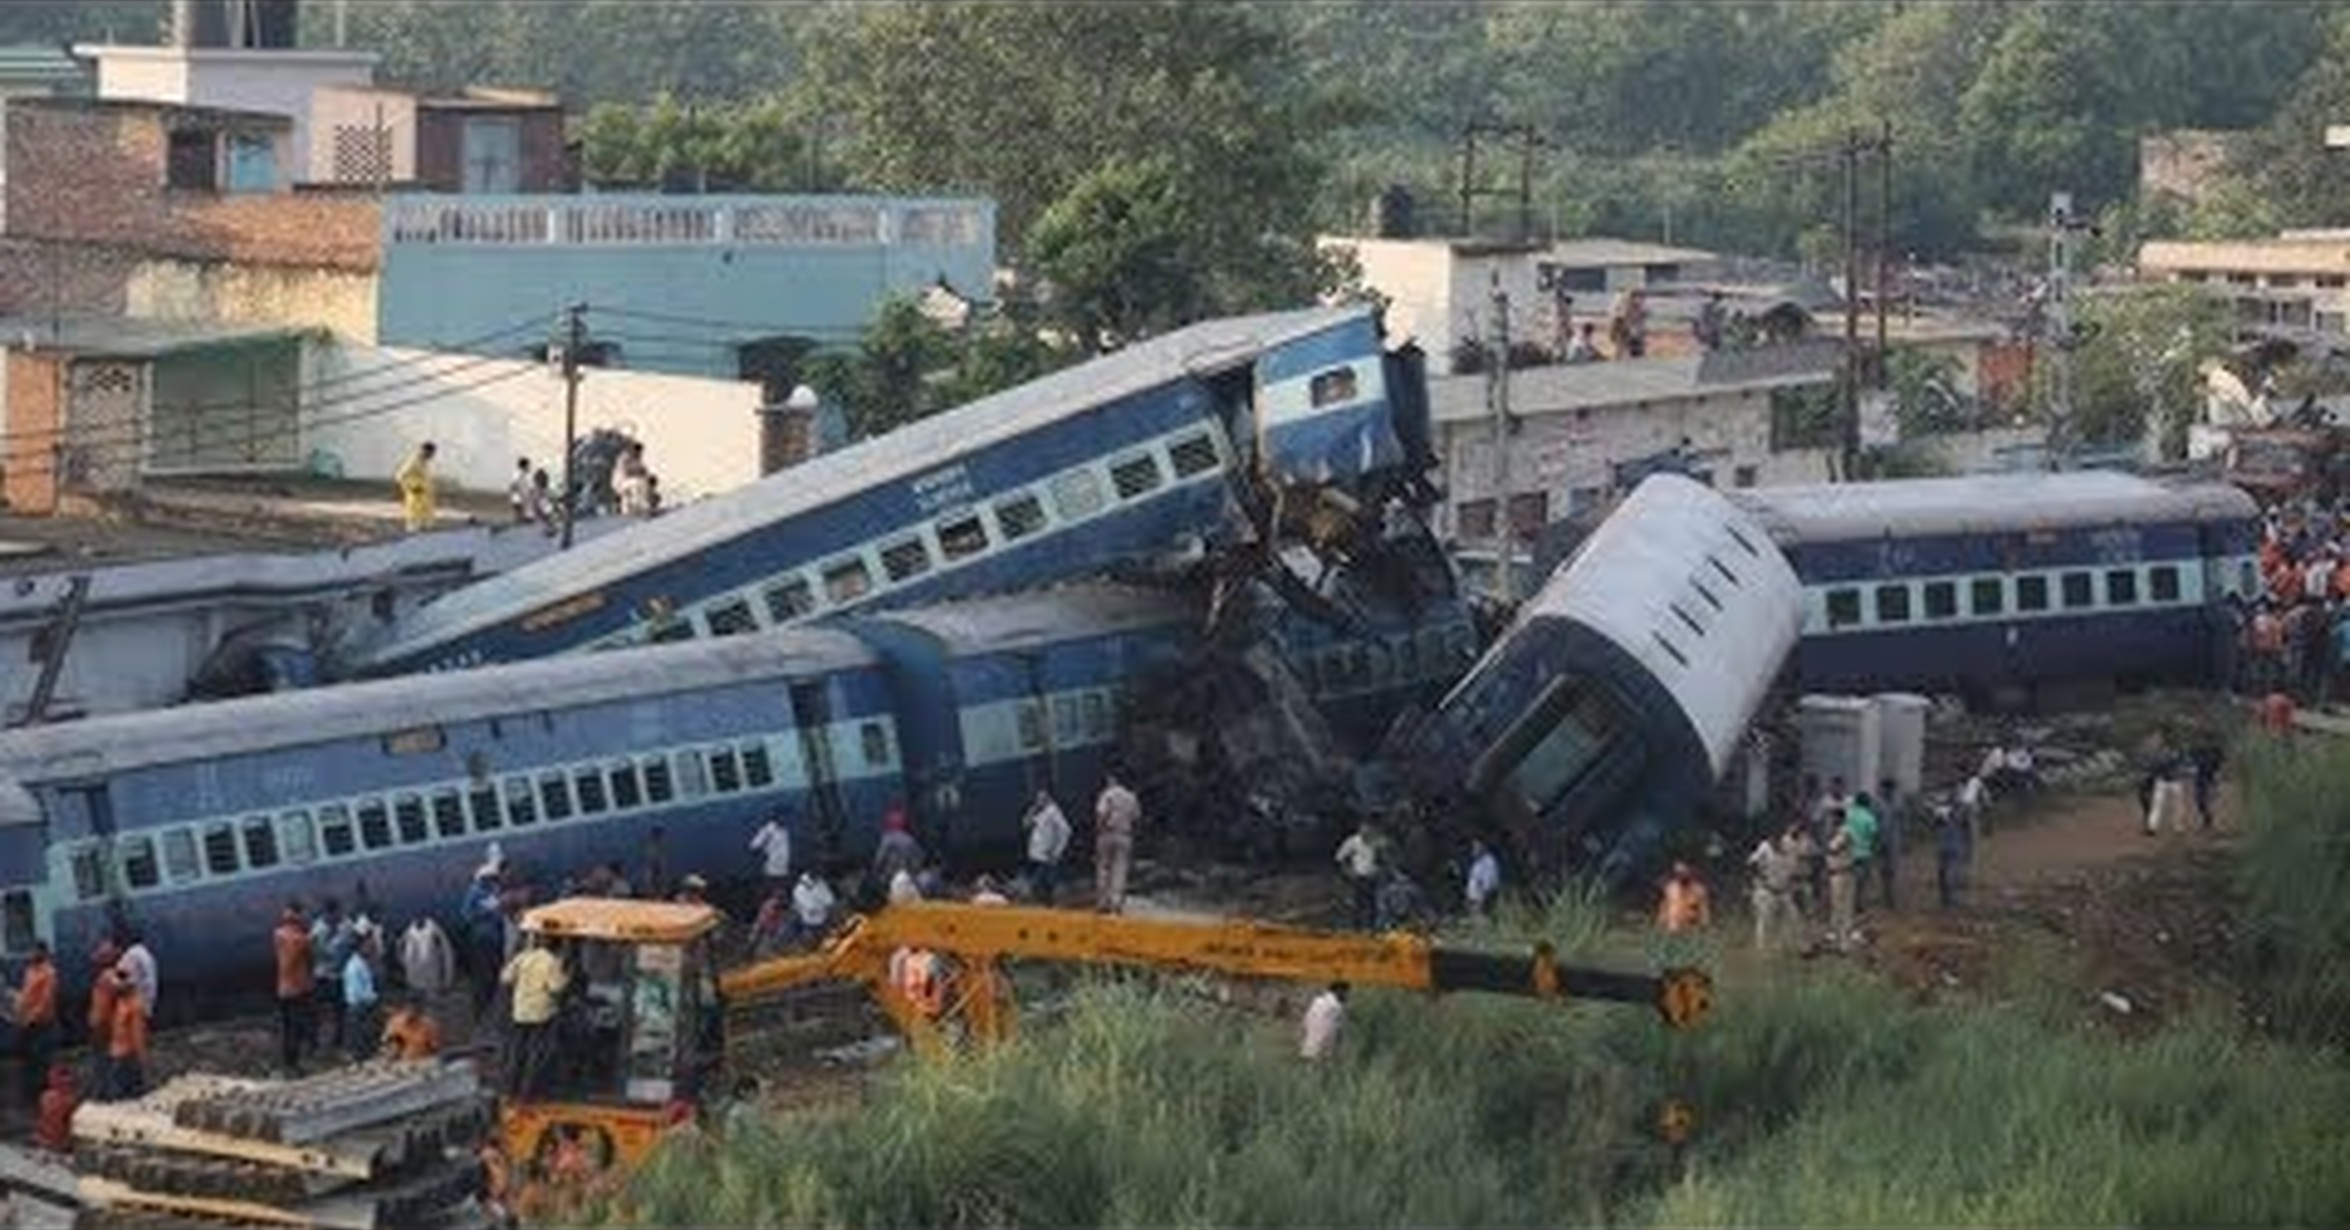 Аварии катастрофы происшествия. Железнодорожные катастрофы. Транспортные катастрофы.